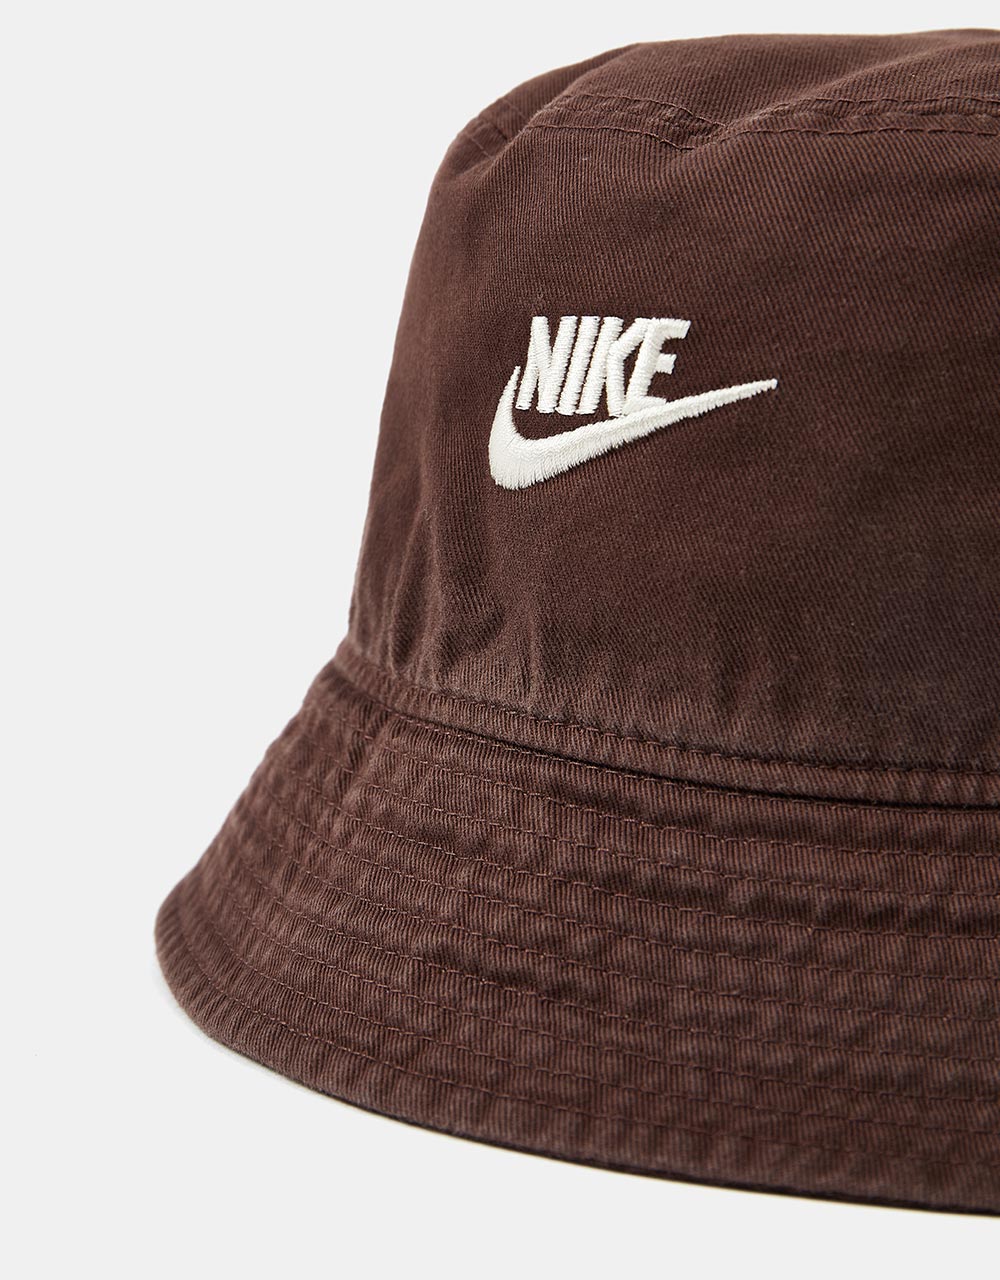 Nike Sportswear Bucket Hat - Earth/Lt Orewood Brn